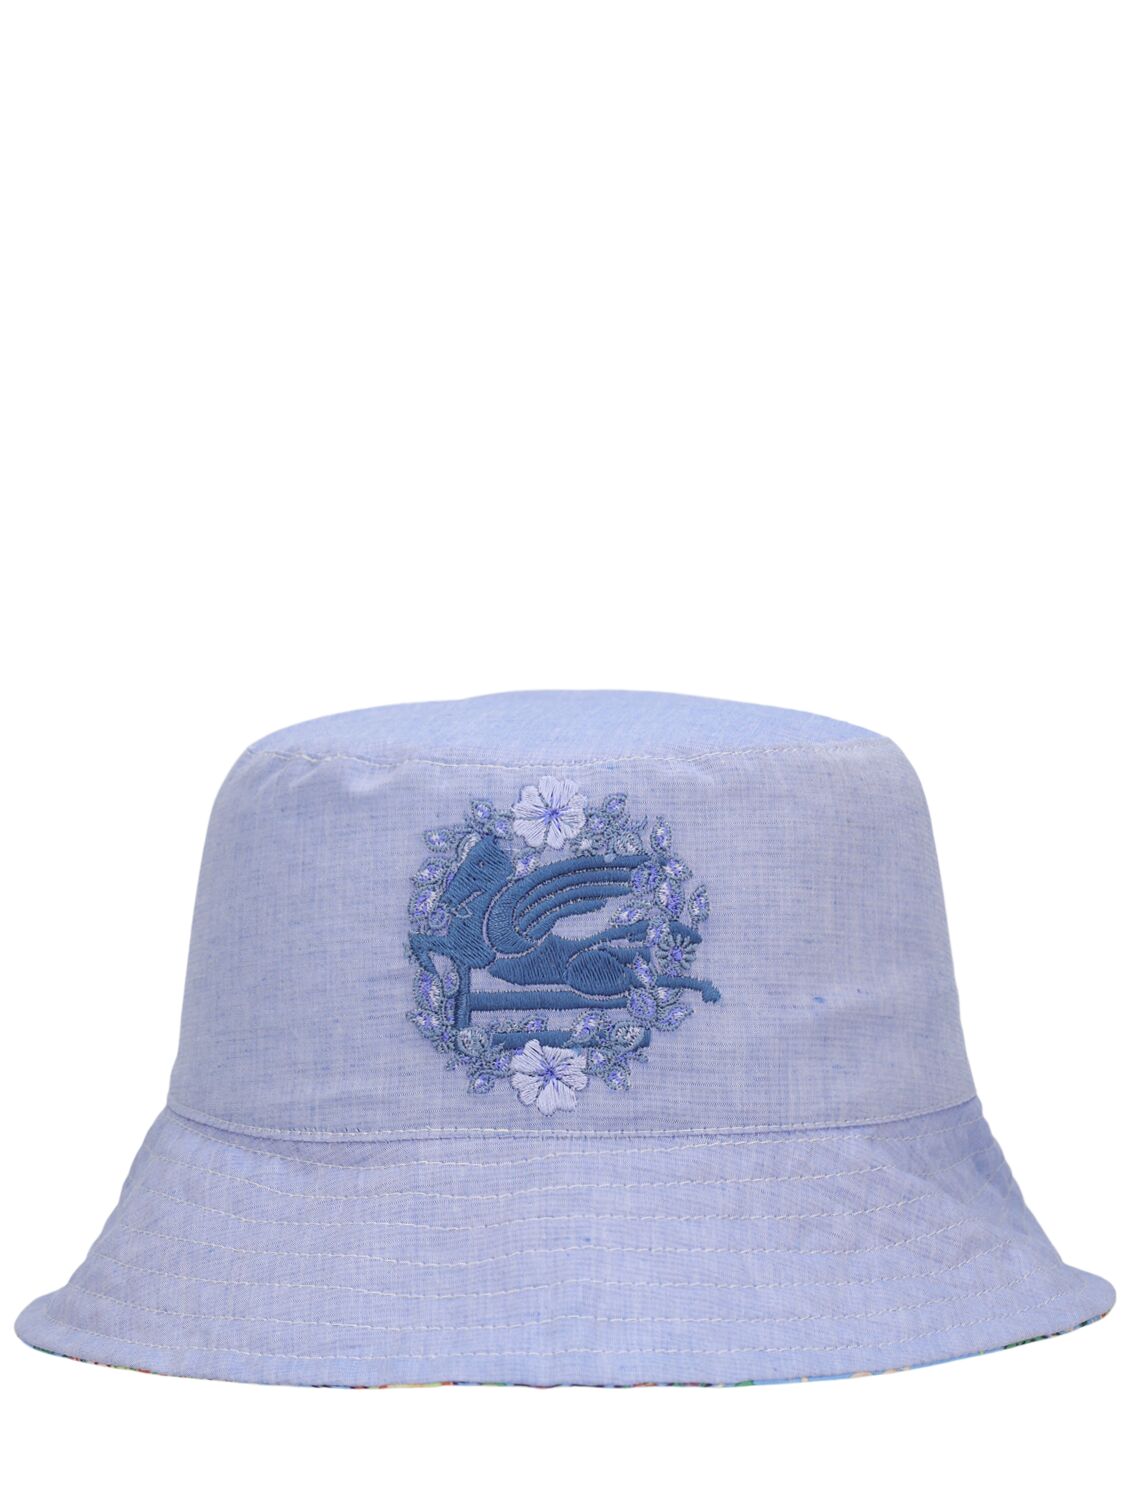 Etro Kids' Printed Cotton & Linen Bucket Hat In Blue